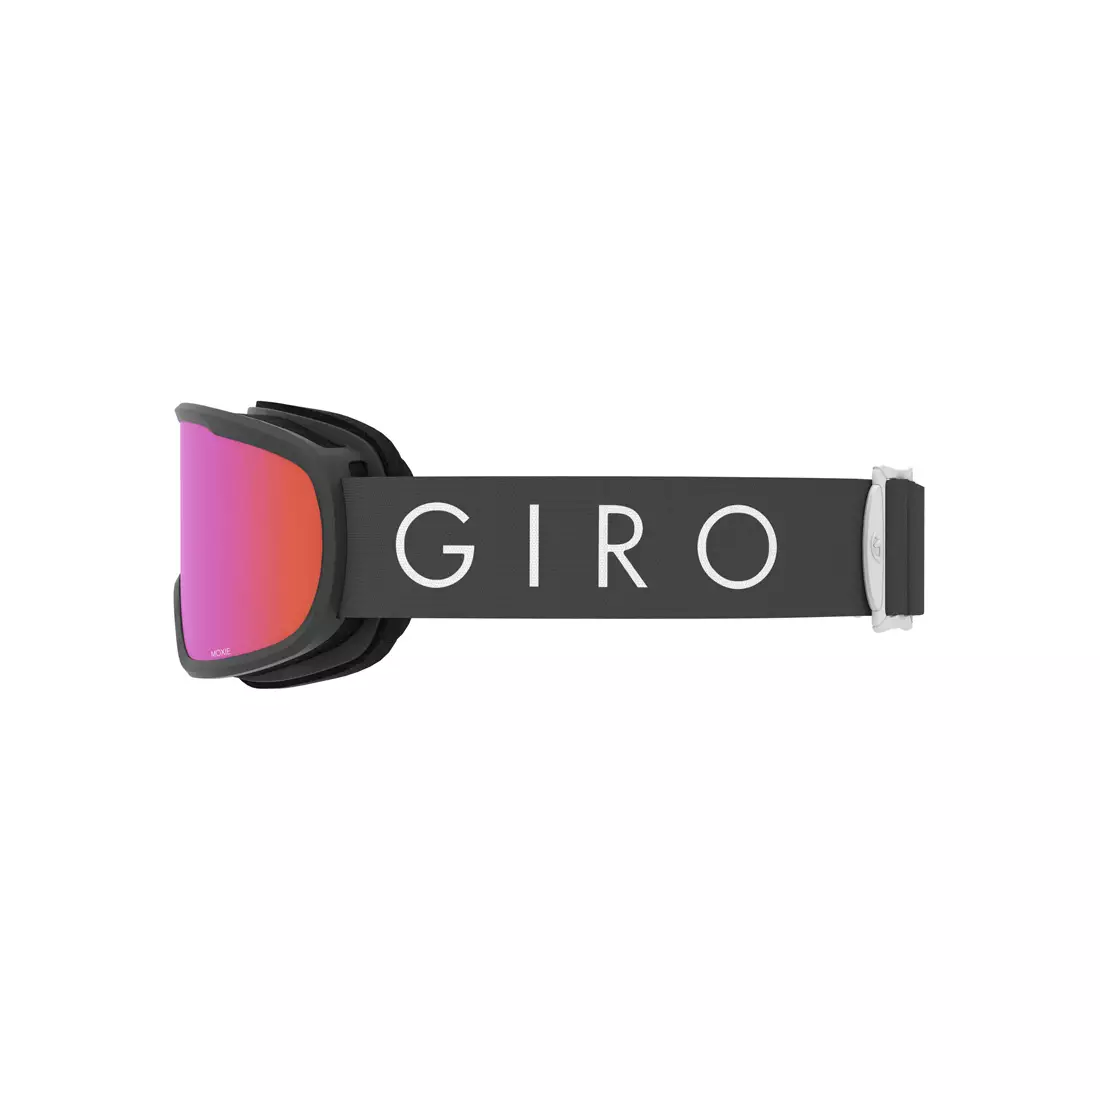 Ski / snowboard goggles GIRO MOXIE TITANIUM CORE LIGHT - GR-7083599